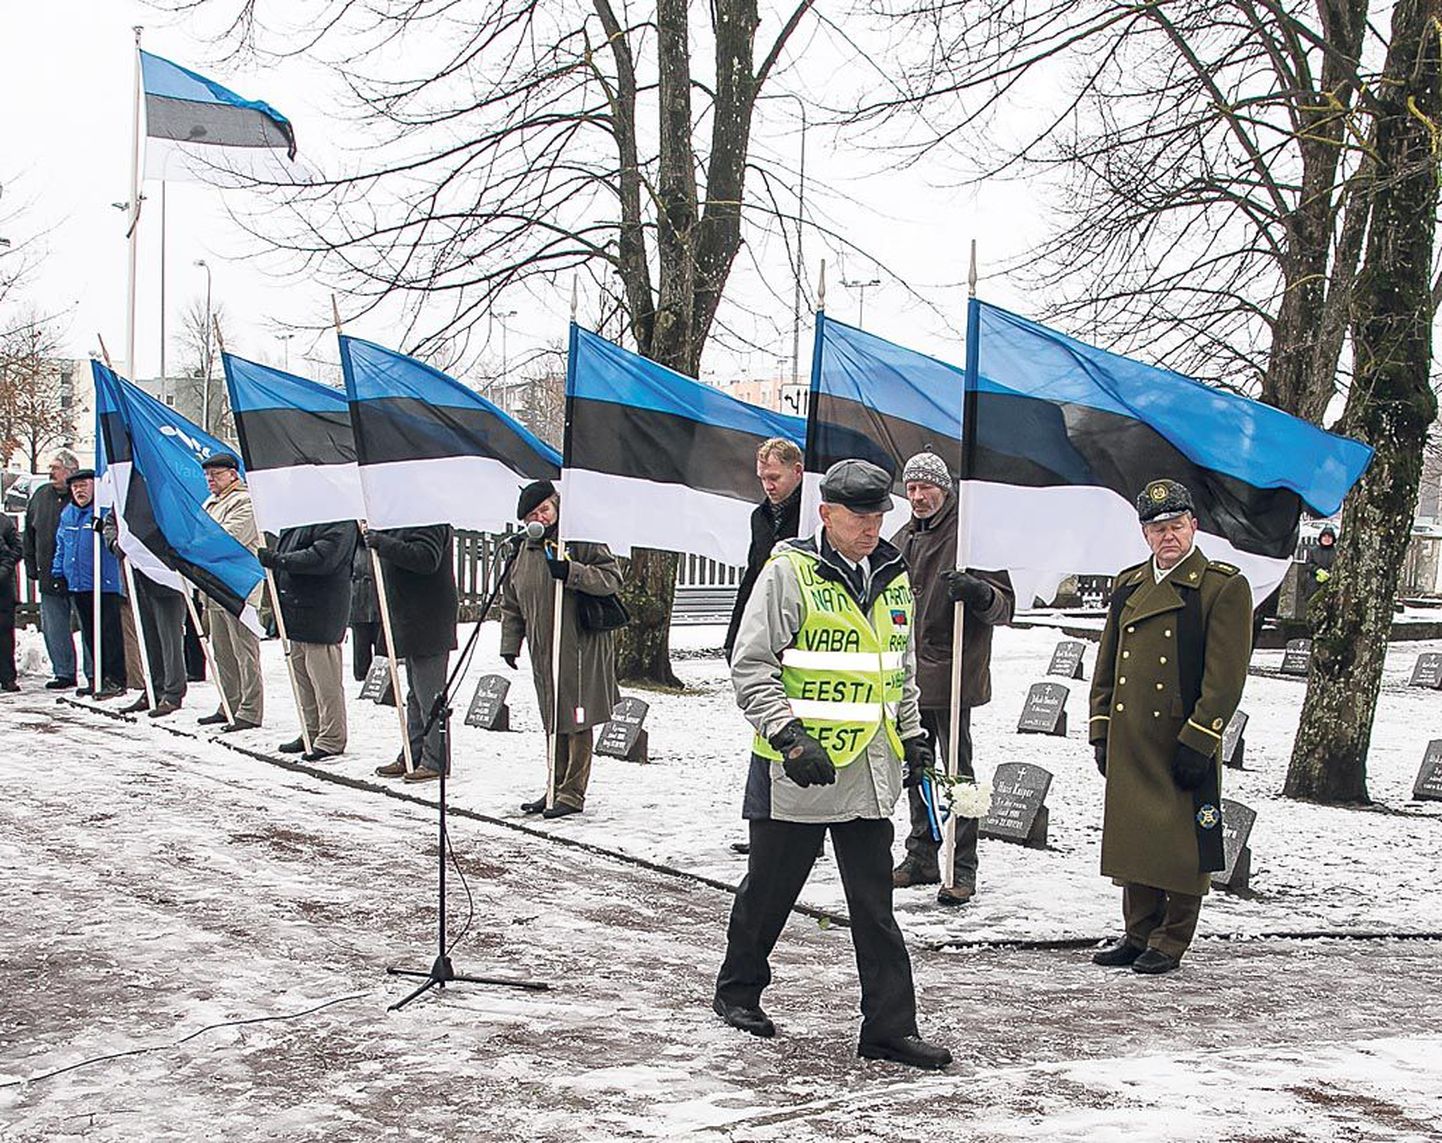 Ennast vabaks meheks vabal maal nimetav Jaan Roosnurm oli mures, et praegused poliitikud võivad piirileppega Tartu rahu õigustühiseks muuta.